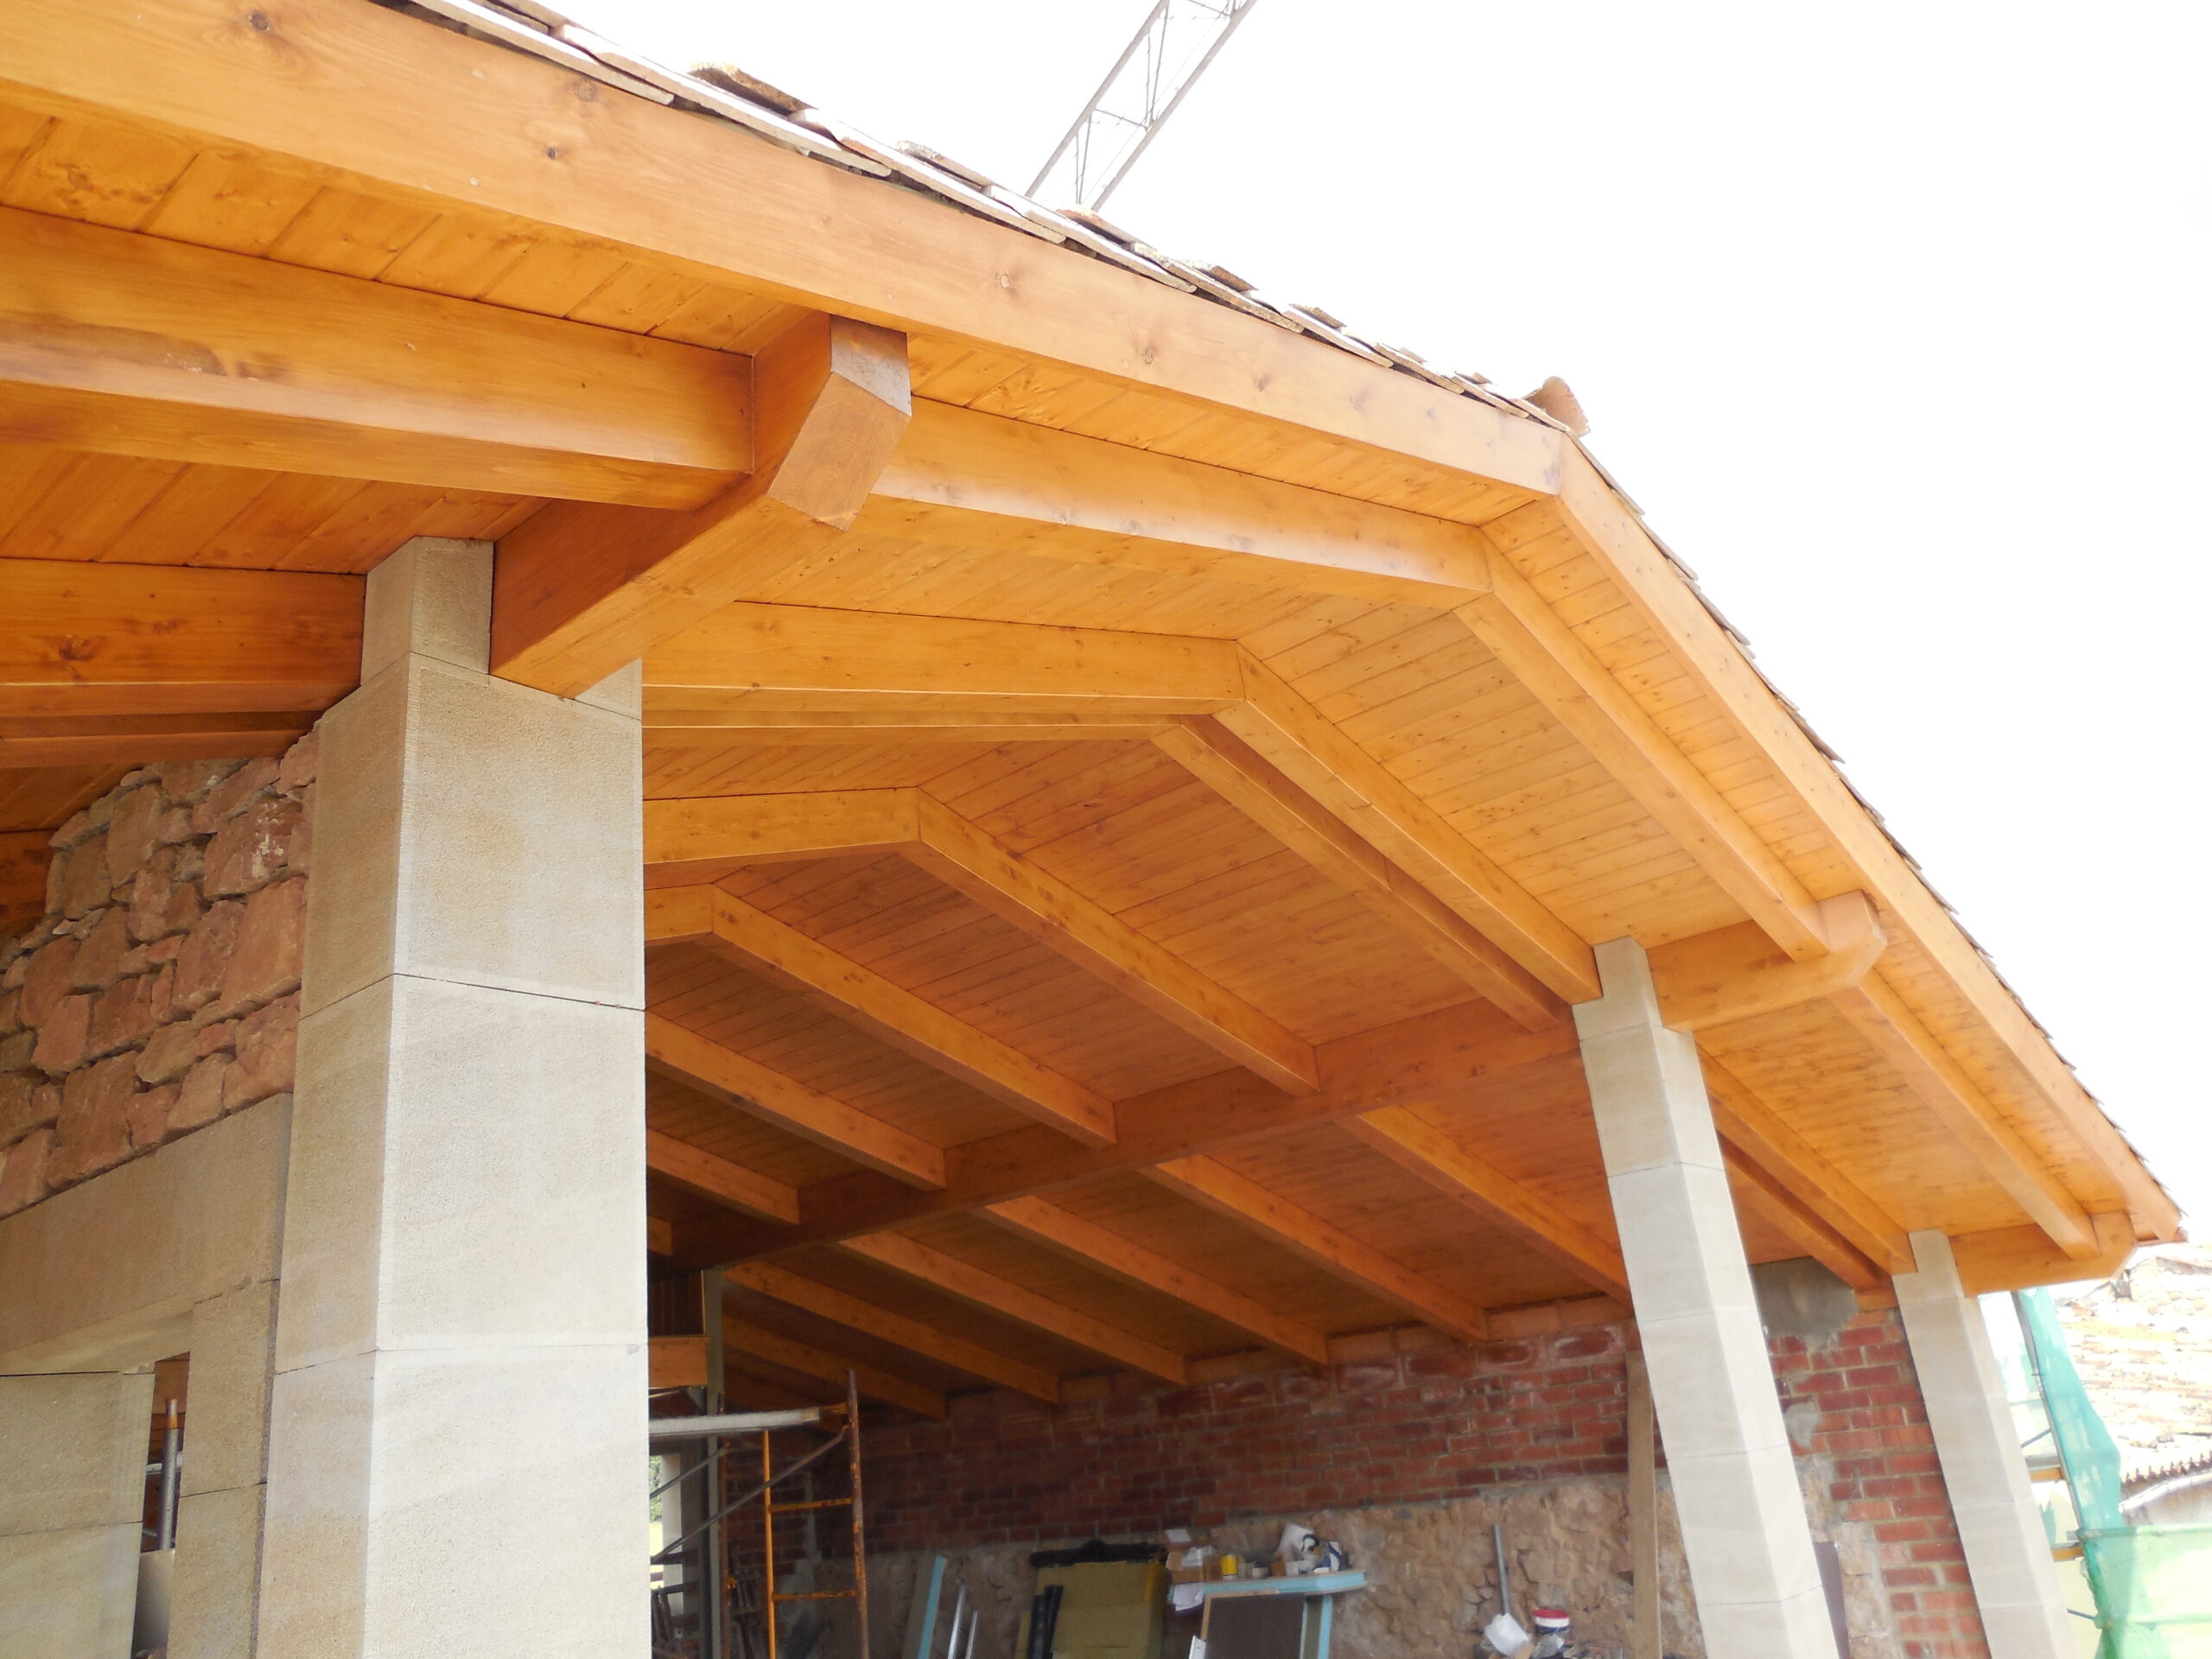 Las estructuras de madera son muy útiles para construir techos, cubiertas o conseguir una planta extra a distinta altura. Dependiendo de que se use en su fabricación se pueden encontrar diferentes tipos.